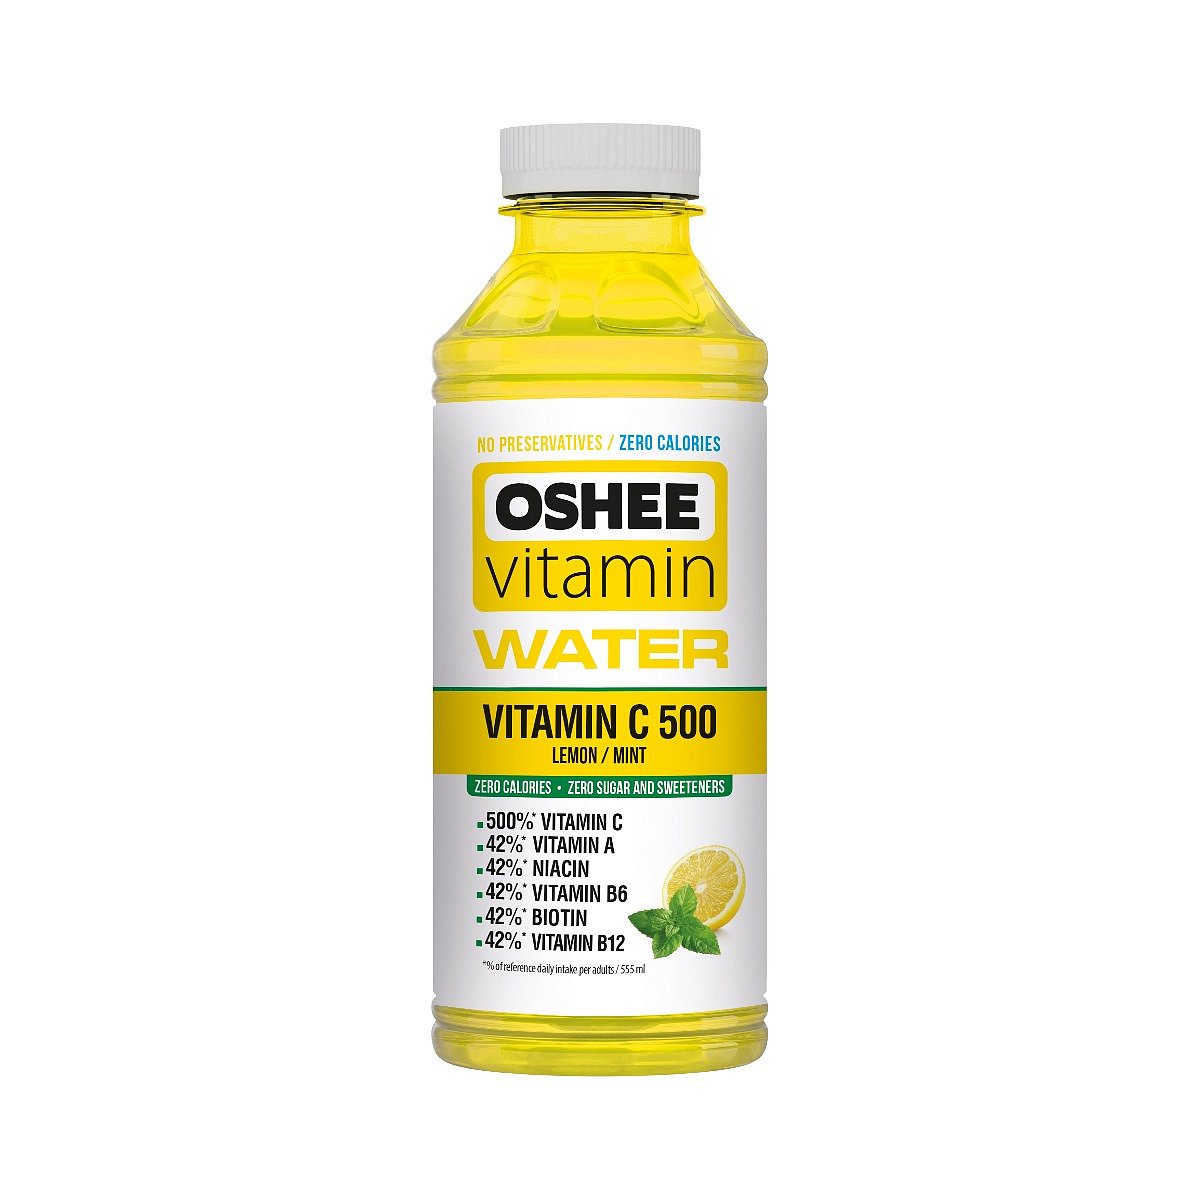 OSHEE Vitamínová voda Vitamin C 500 555 ml